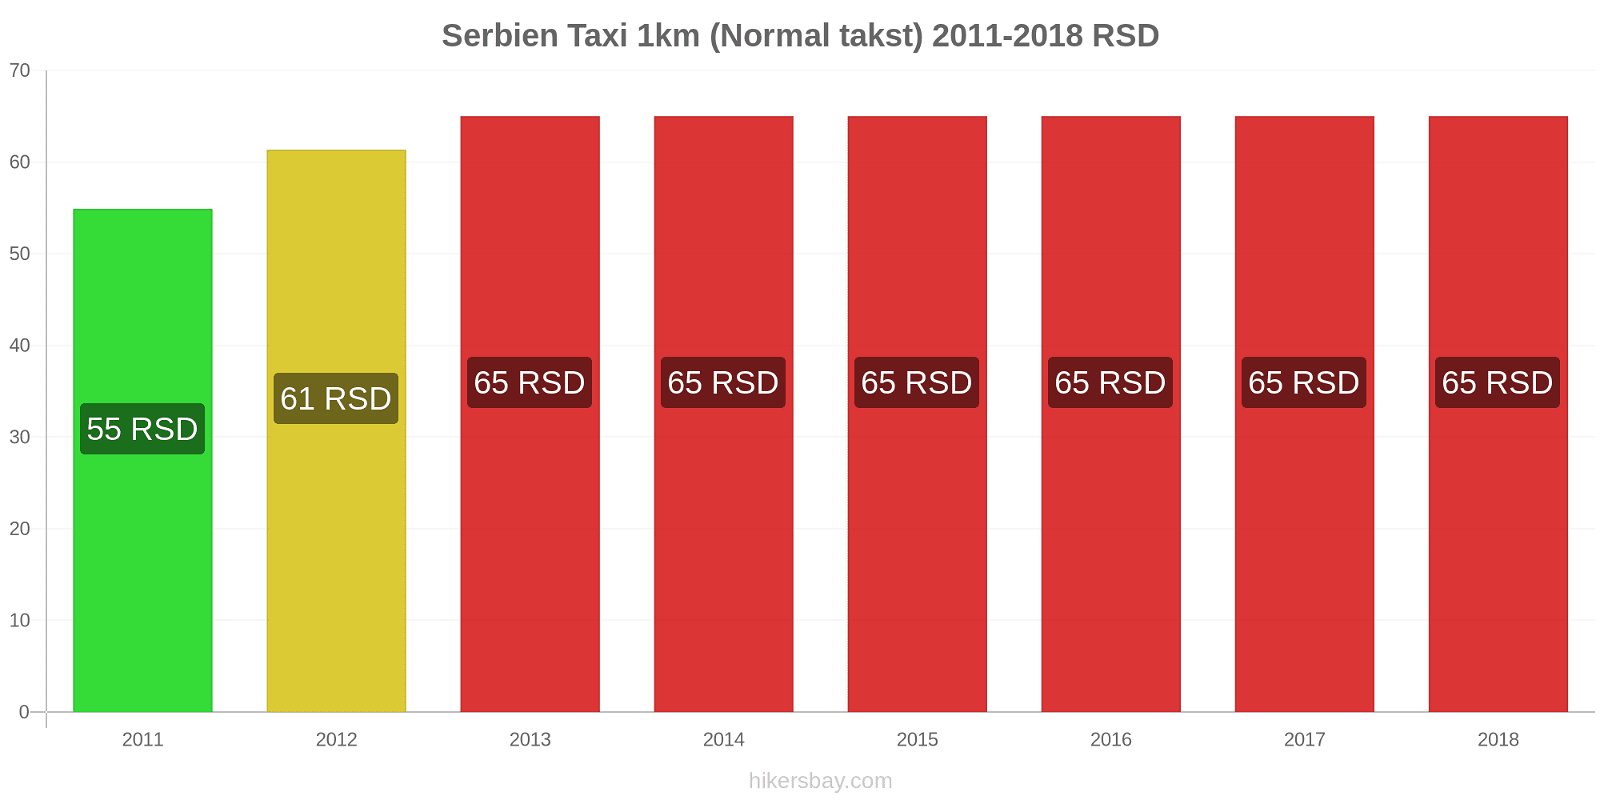 Serbien prisændringer Taxi 1km (normal takst) hikersbay.com